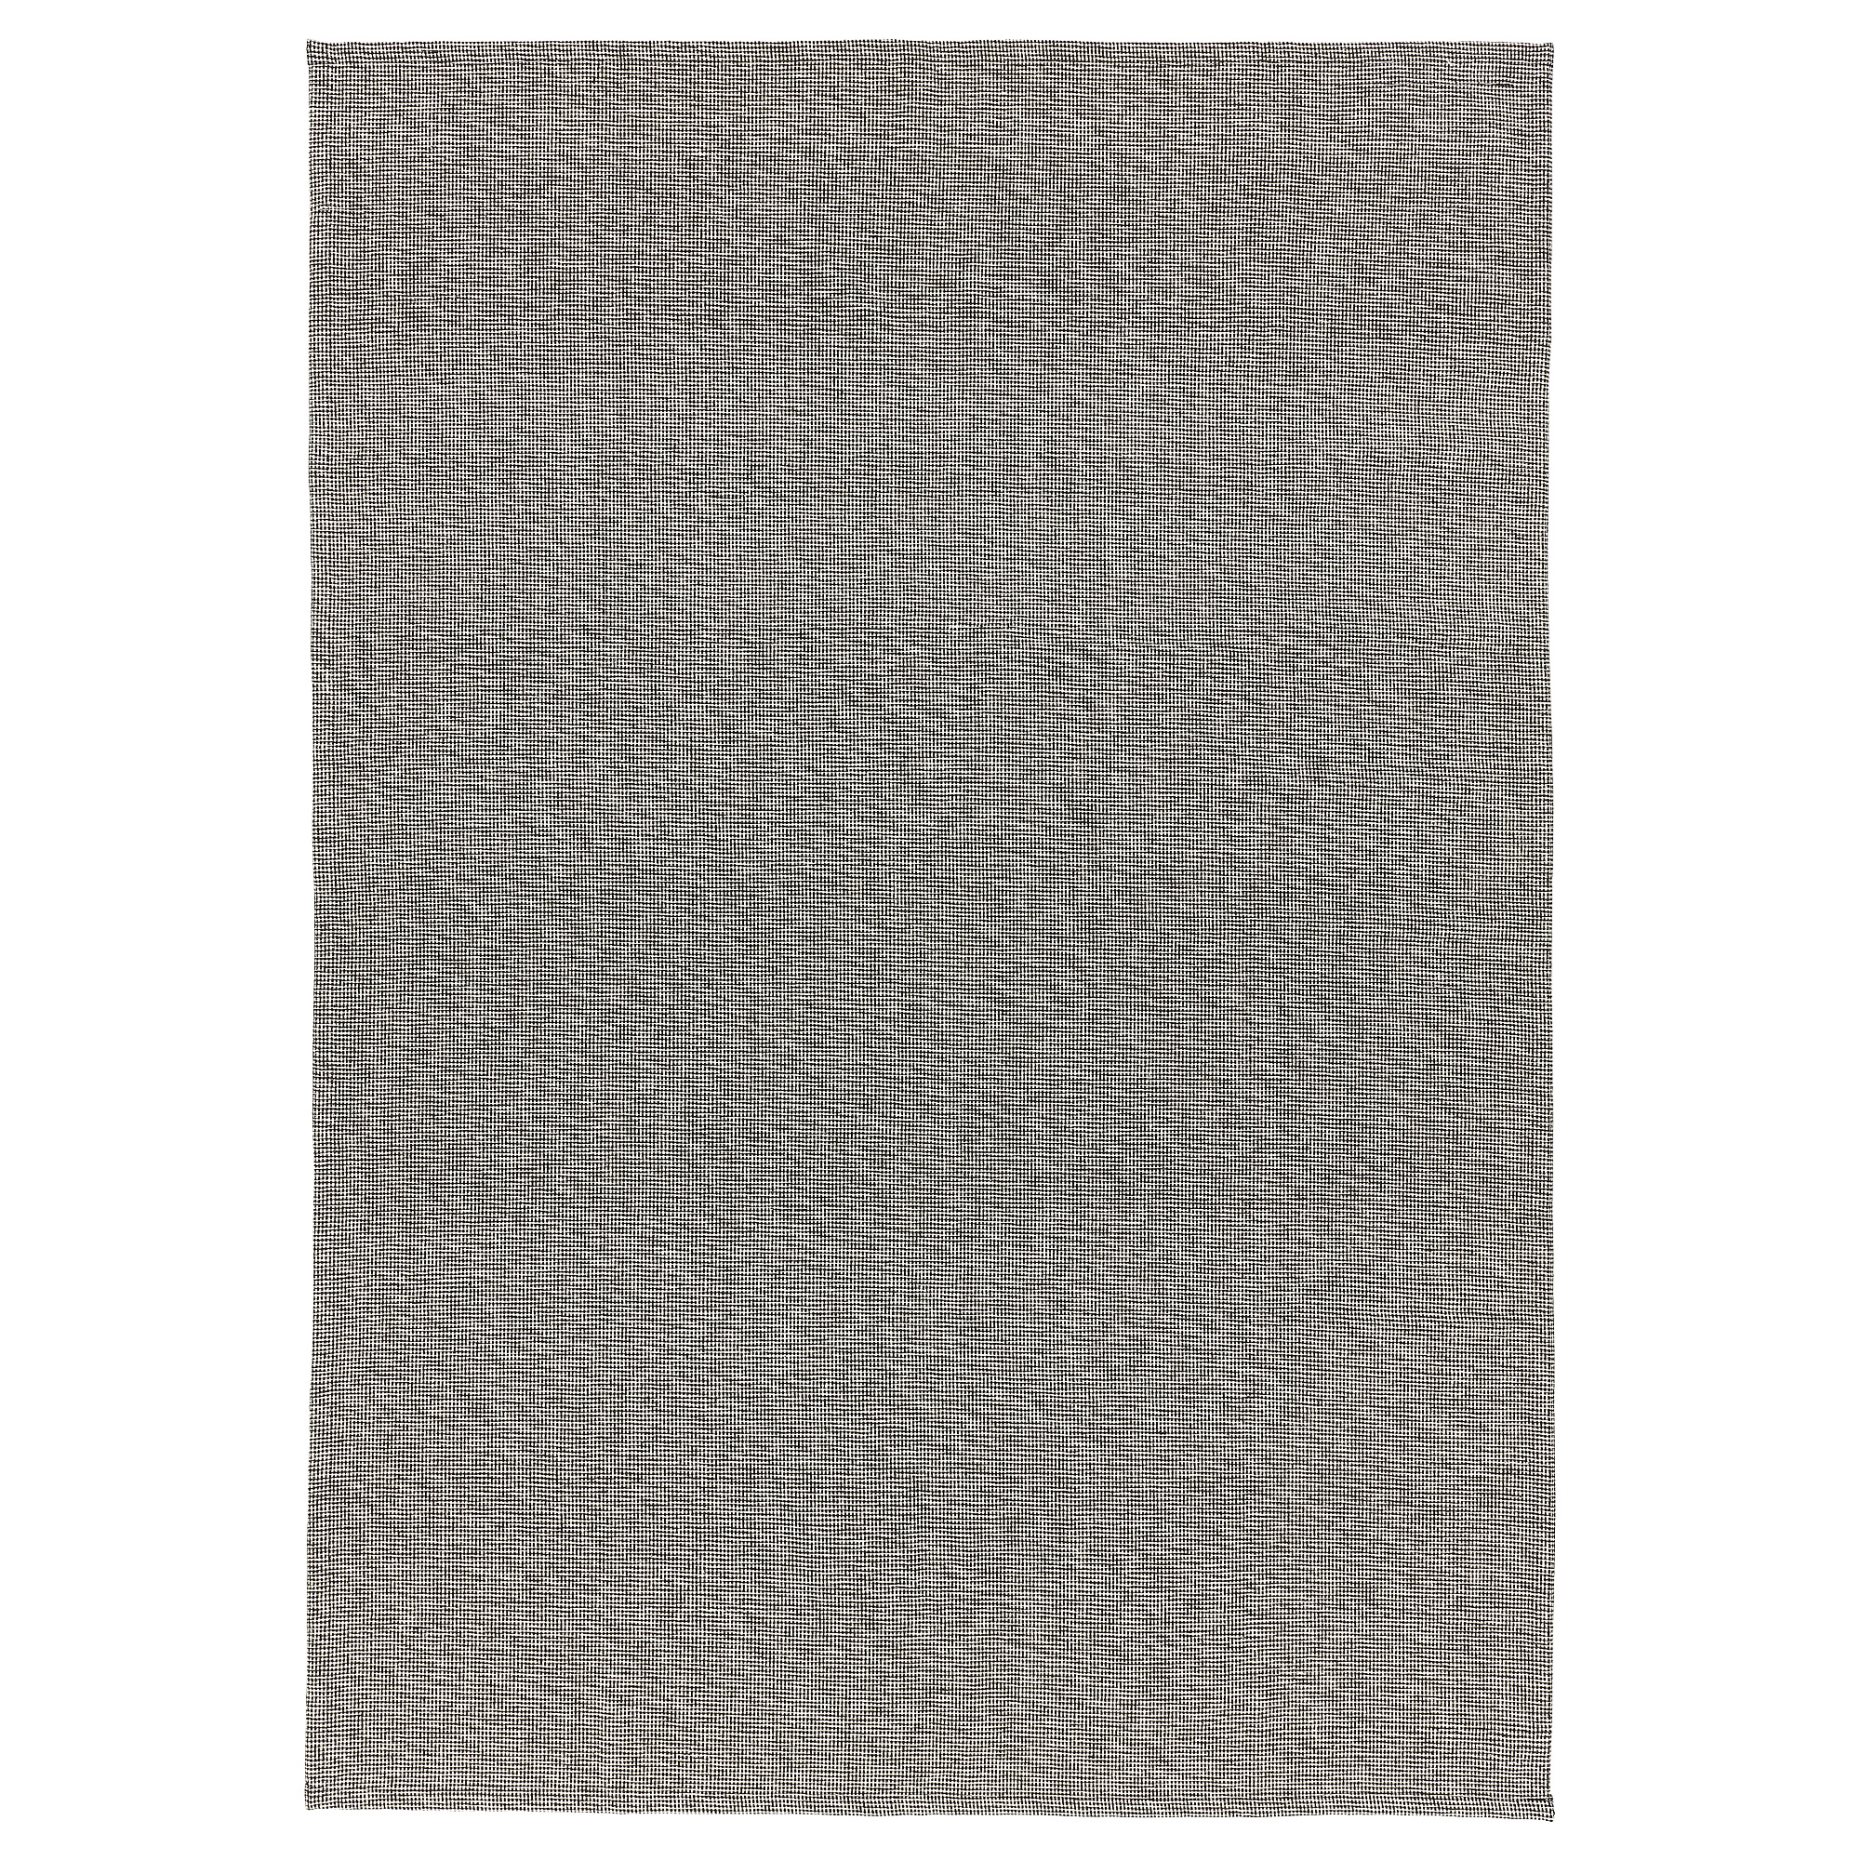 TIPHEDE, χαλί χαμηλή πλέξη, 155x220 cm, 204.700.47